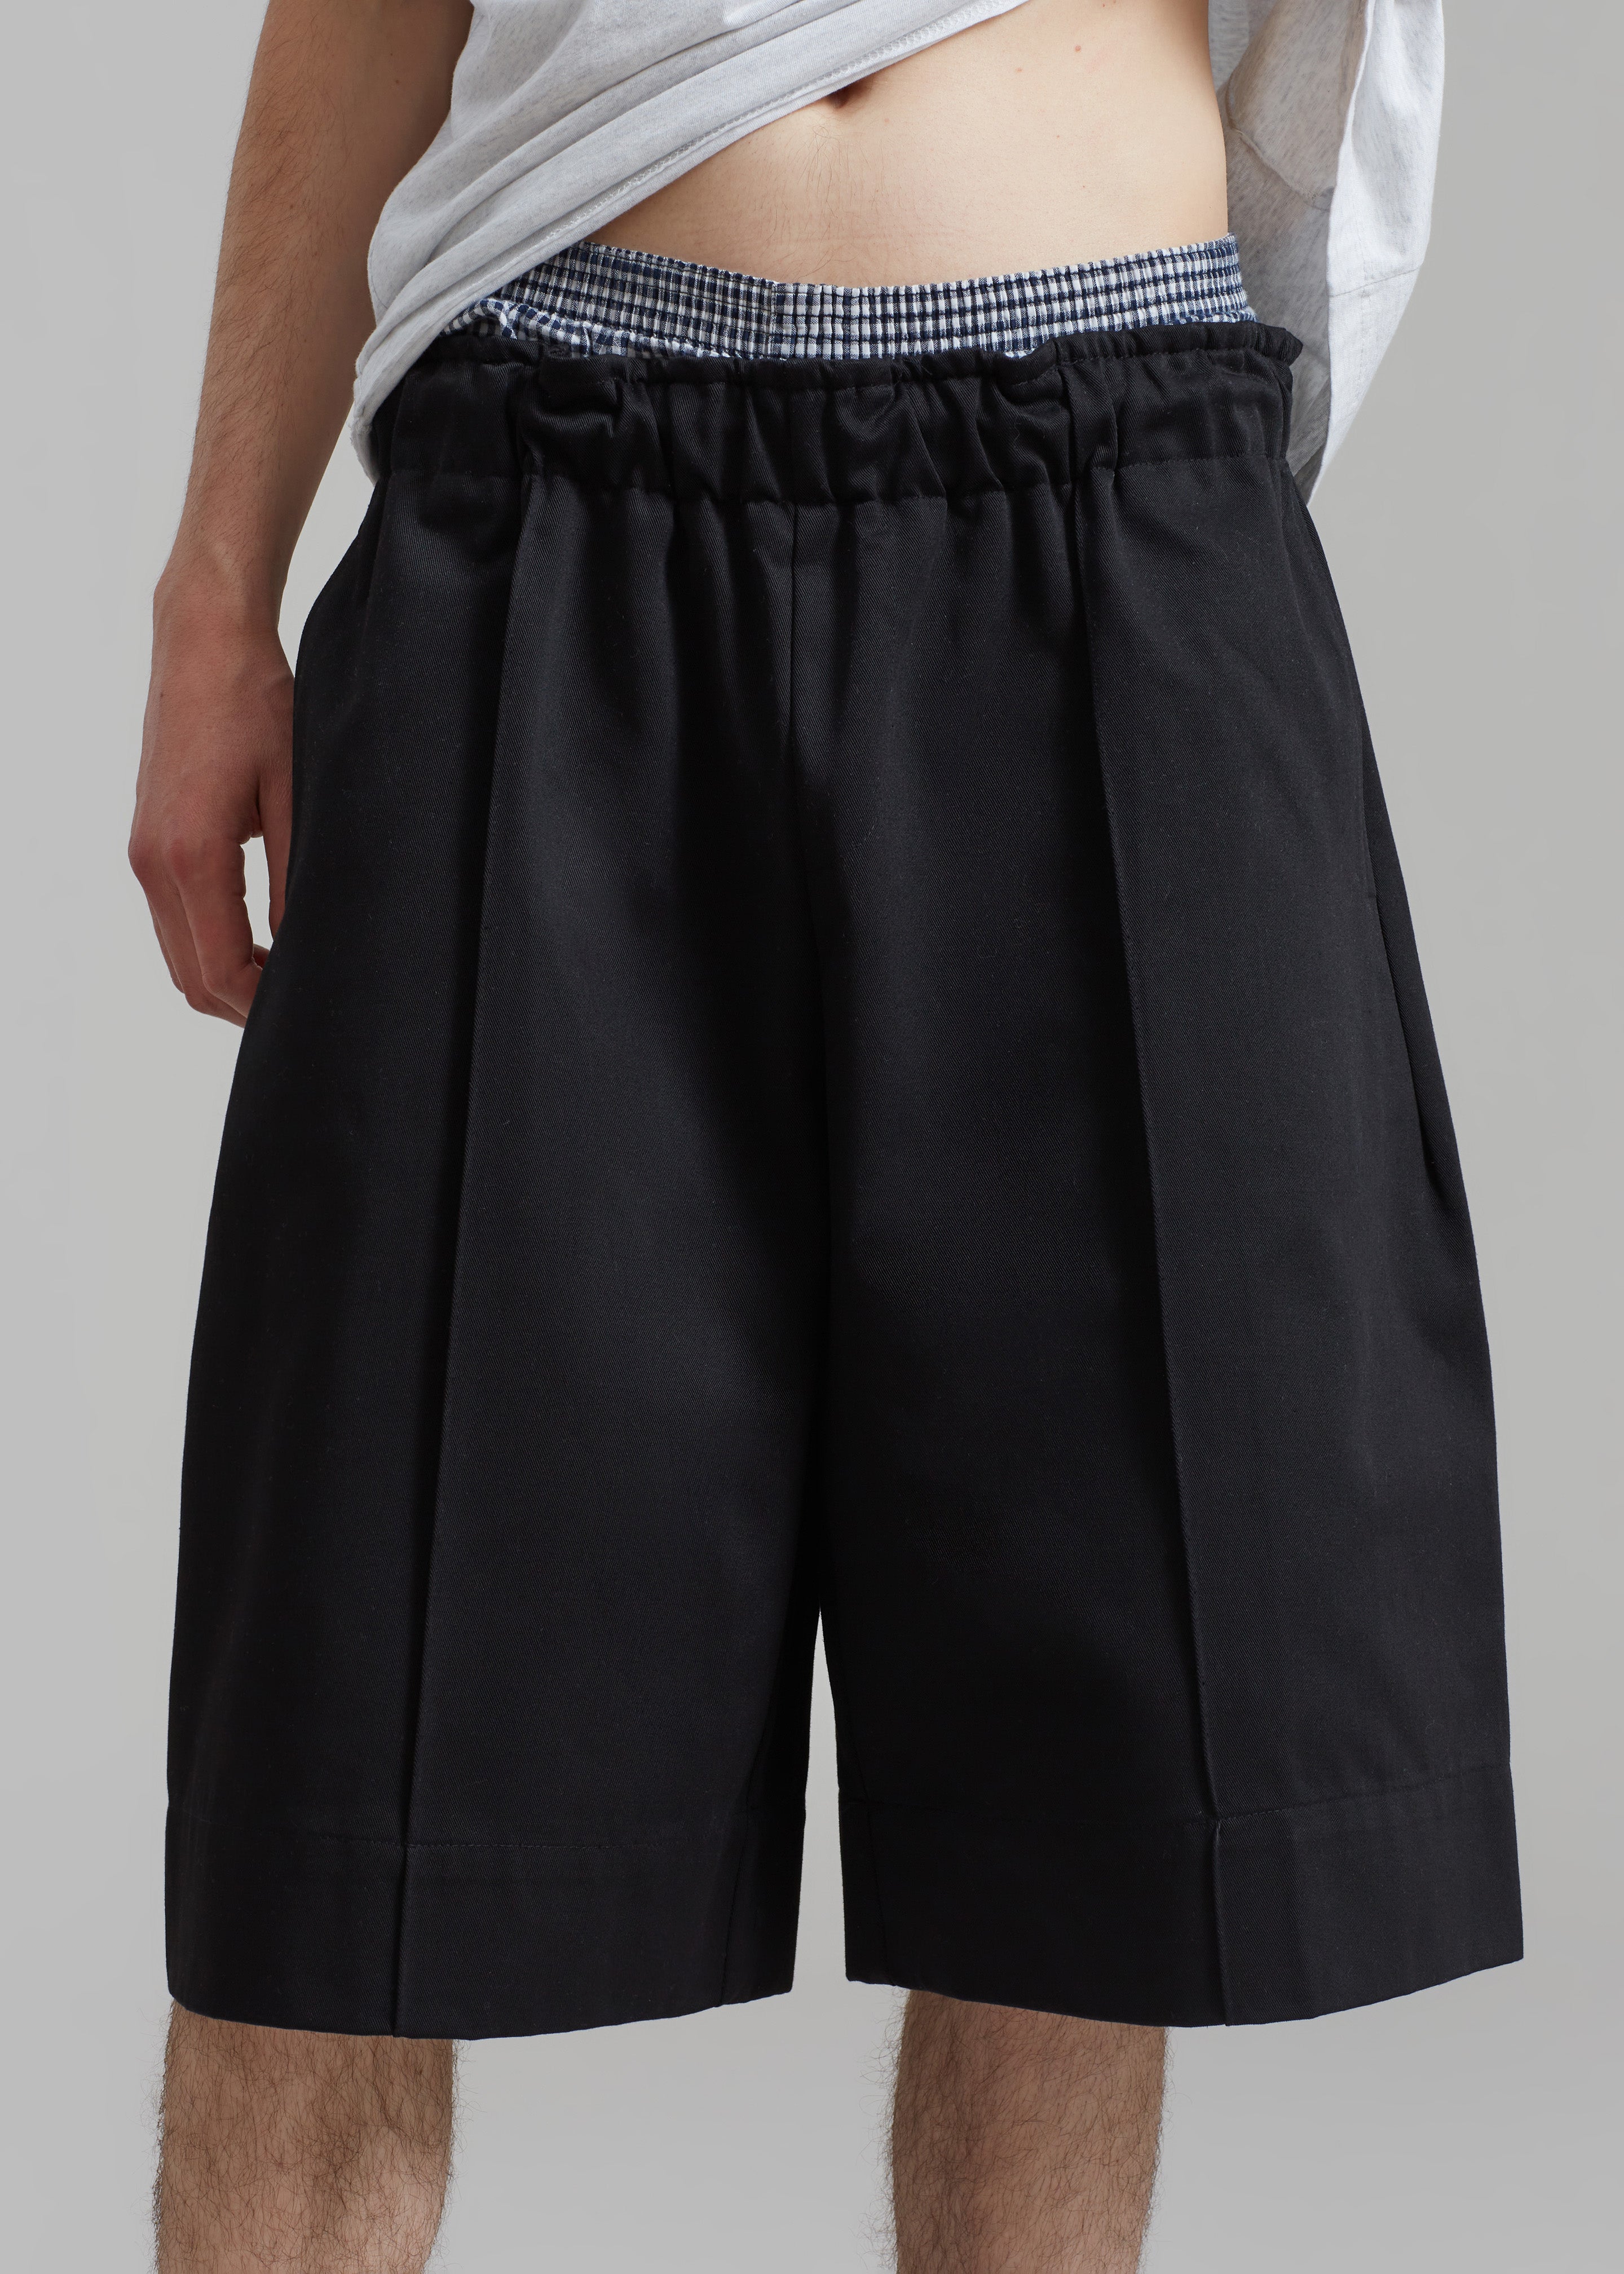 Adan Bermuda Shorts - Black - 8